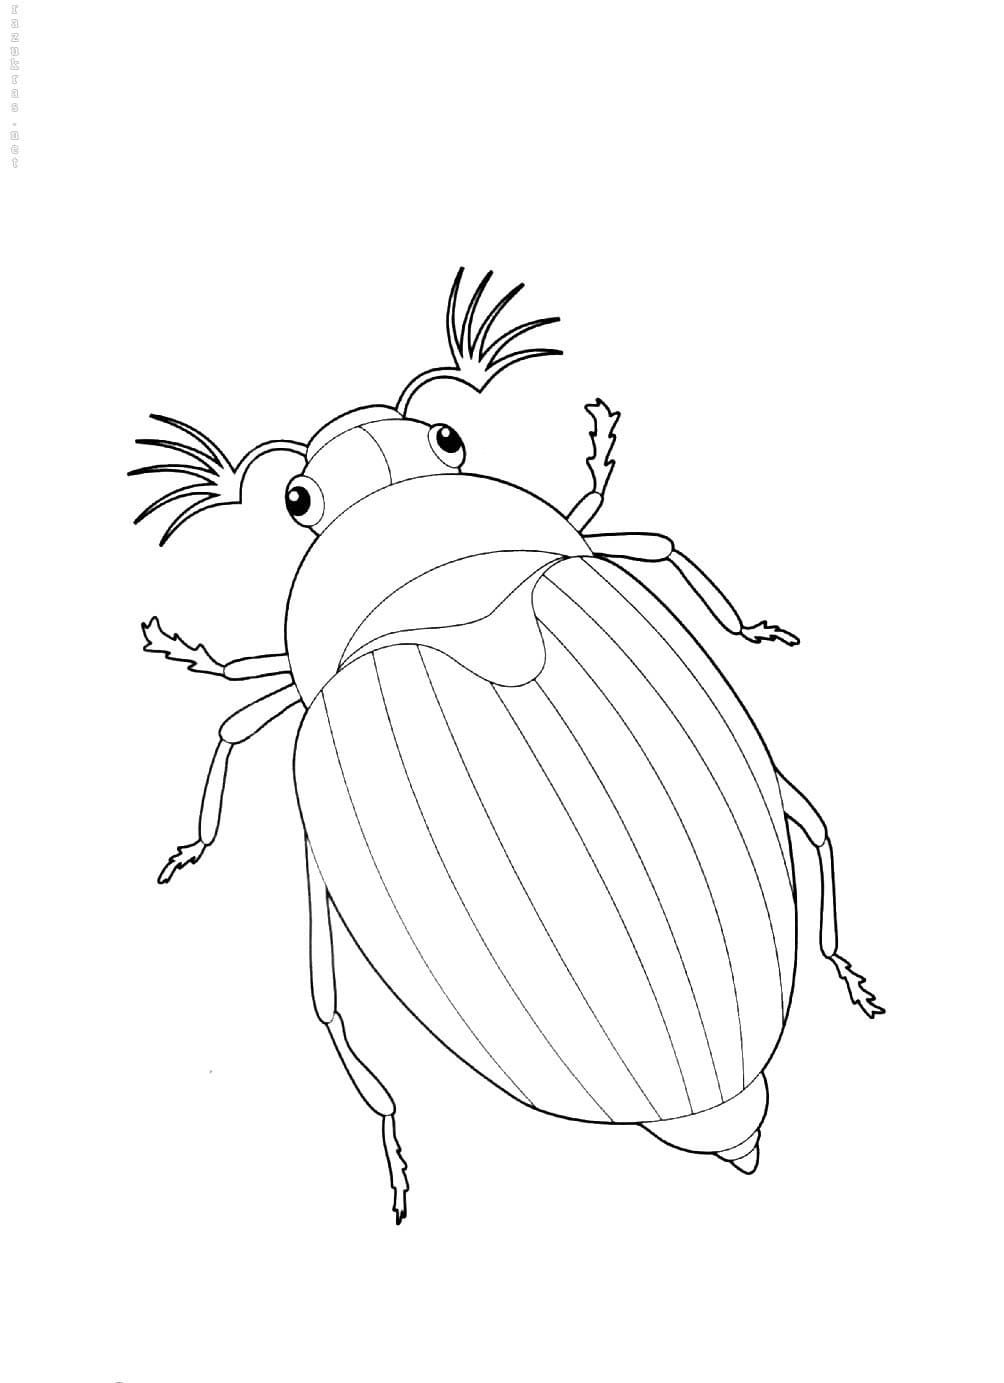 Рисунок для детей майский жук - 51 фото